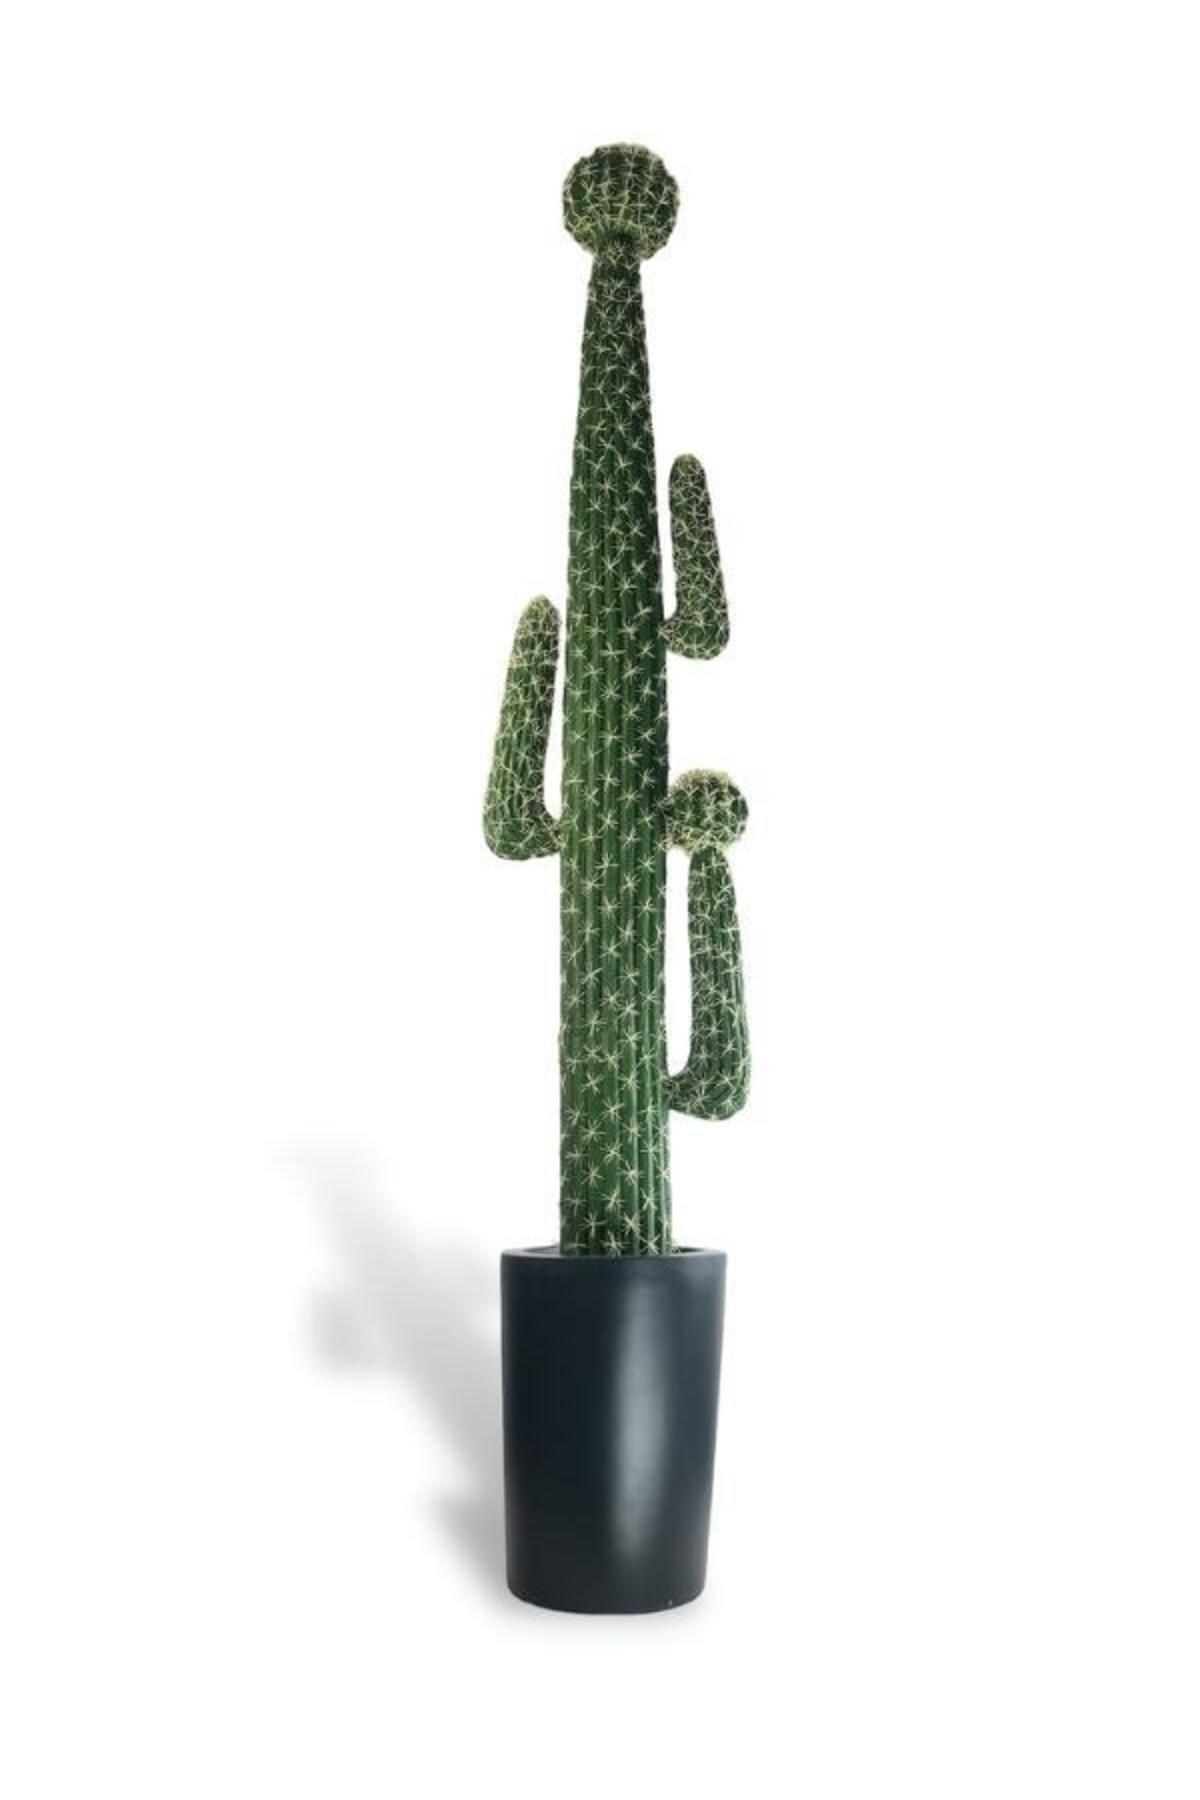 Nettenevime Yapay Çiçek Dev Kaktüs Ağacı 210cm Siyah Saksıda 4kollu Cactus Tree Plants